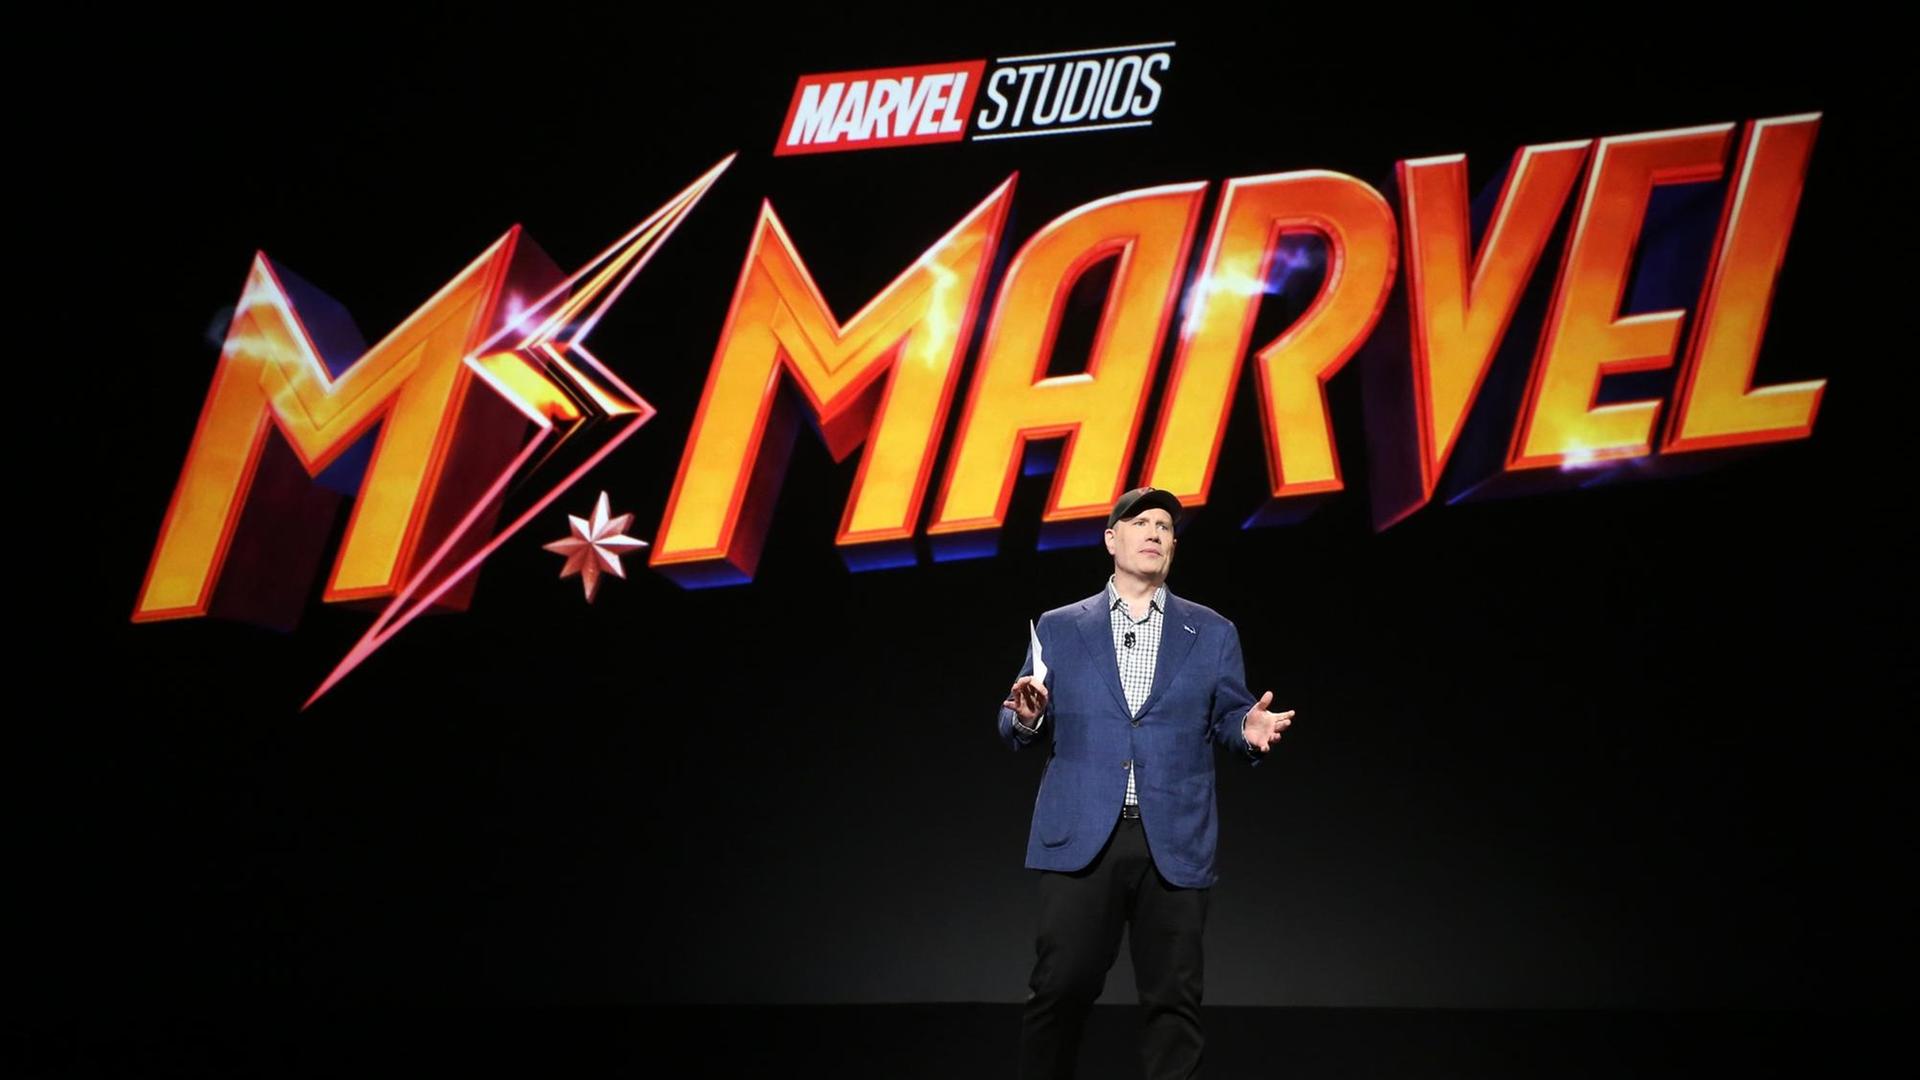 Der Präsident der Marvel Studios, Kevin Feige, auf einer Bühne bei einer Präsentation. Hinter ihm steht in grosser orangener Schrift: Mr. Marvel.